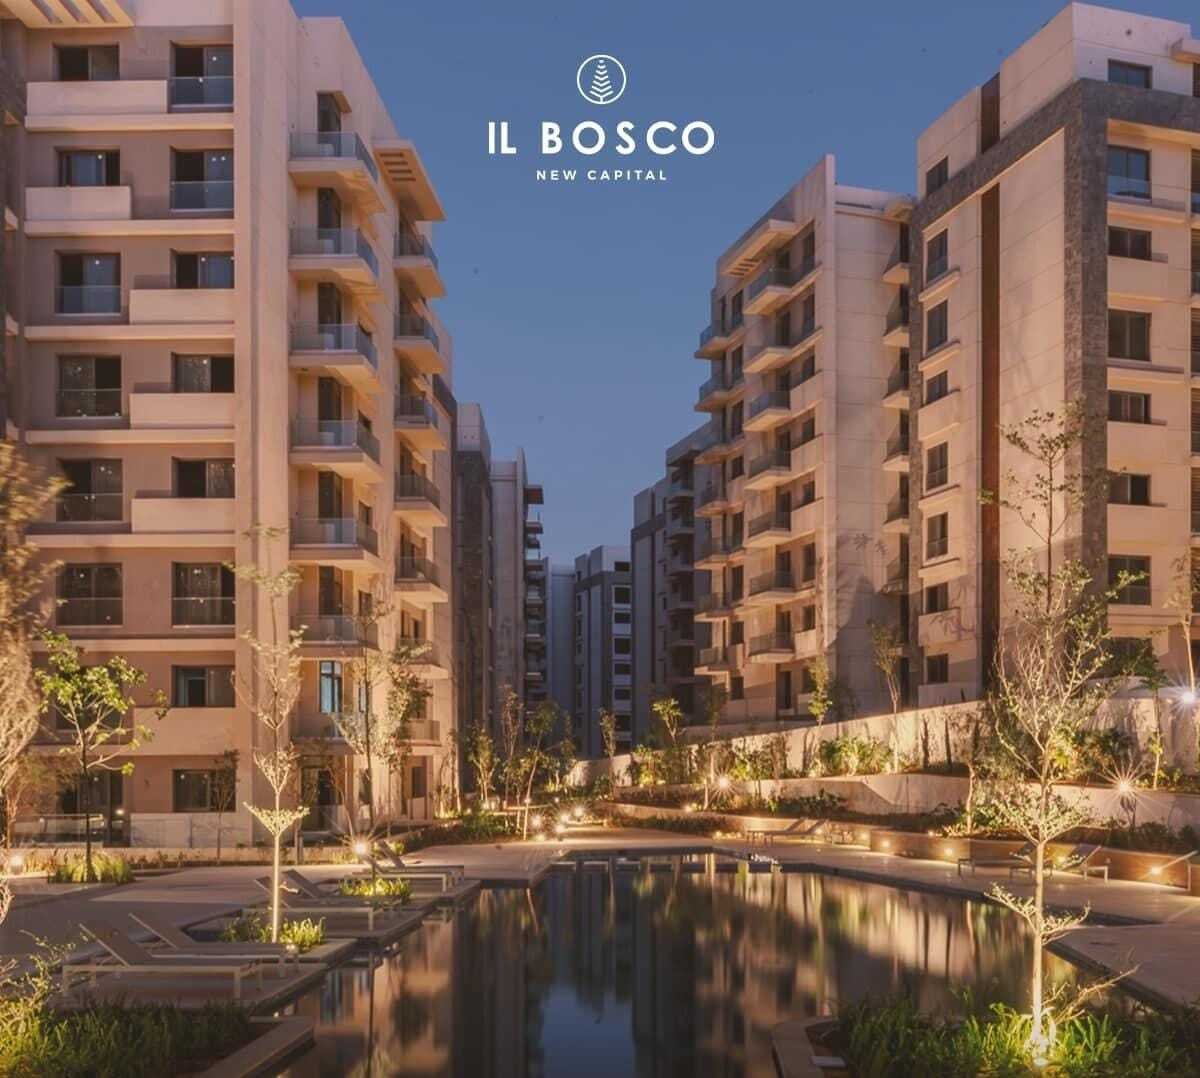 شقة للبيع بالعاصمة الإدارية الجديدة مساحة131متر في كمبوند IL BOSCO | THE PEAK PROPERTIES